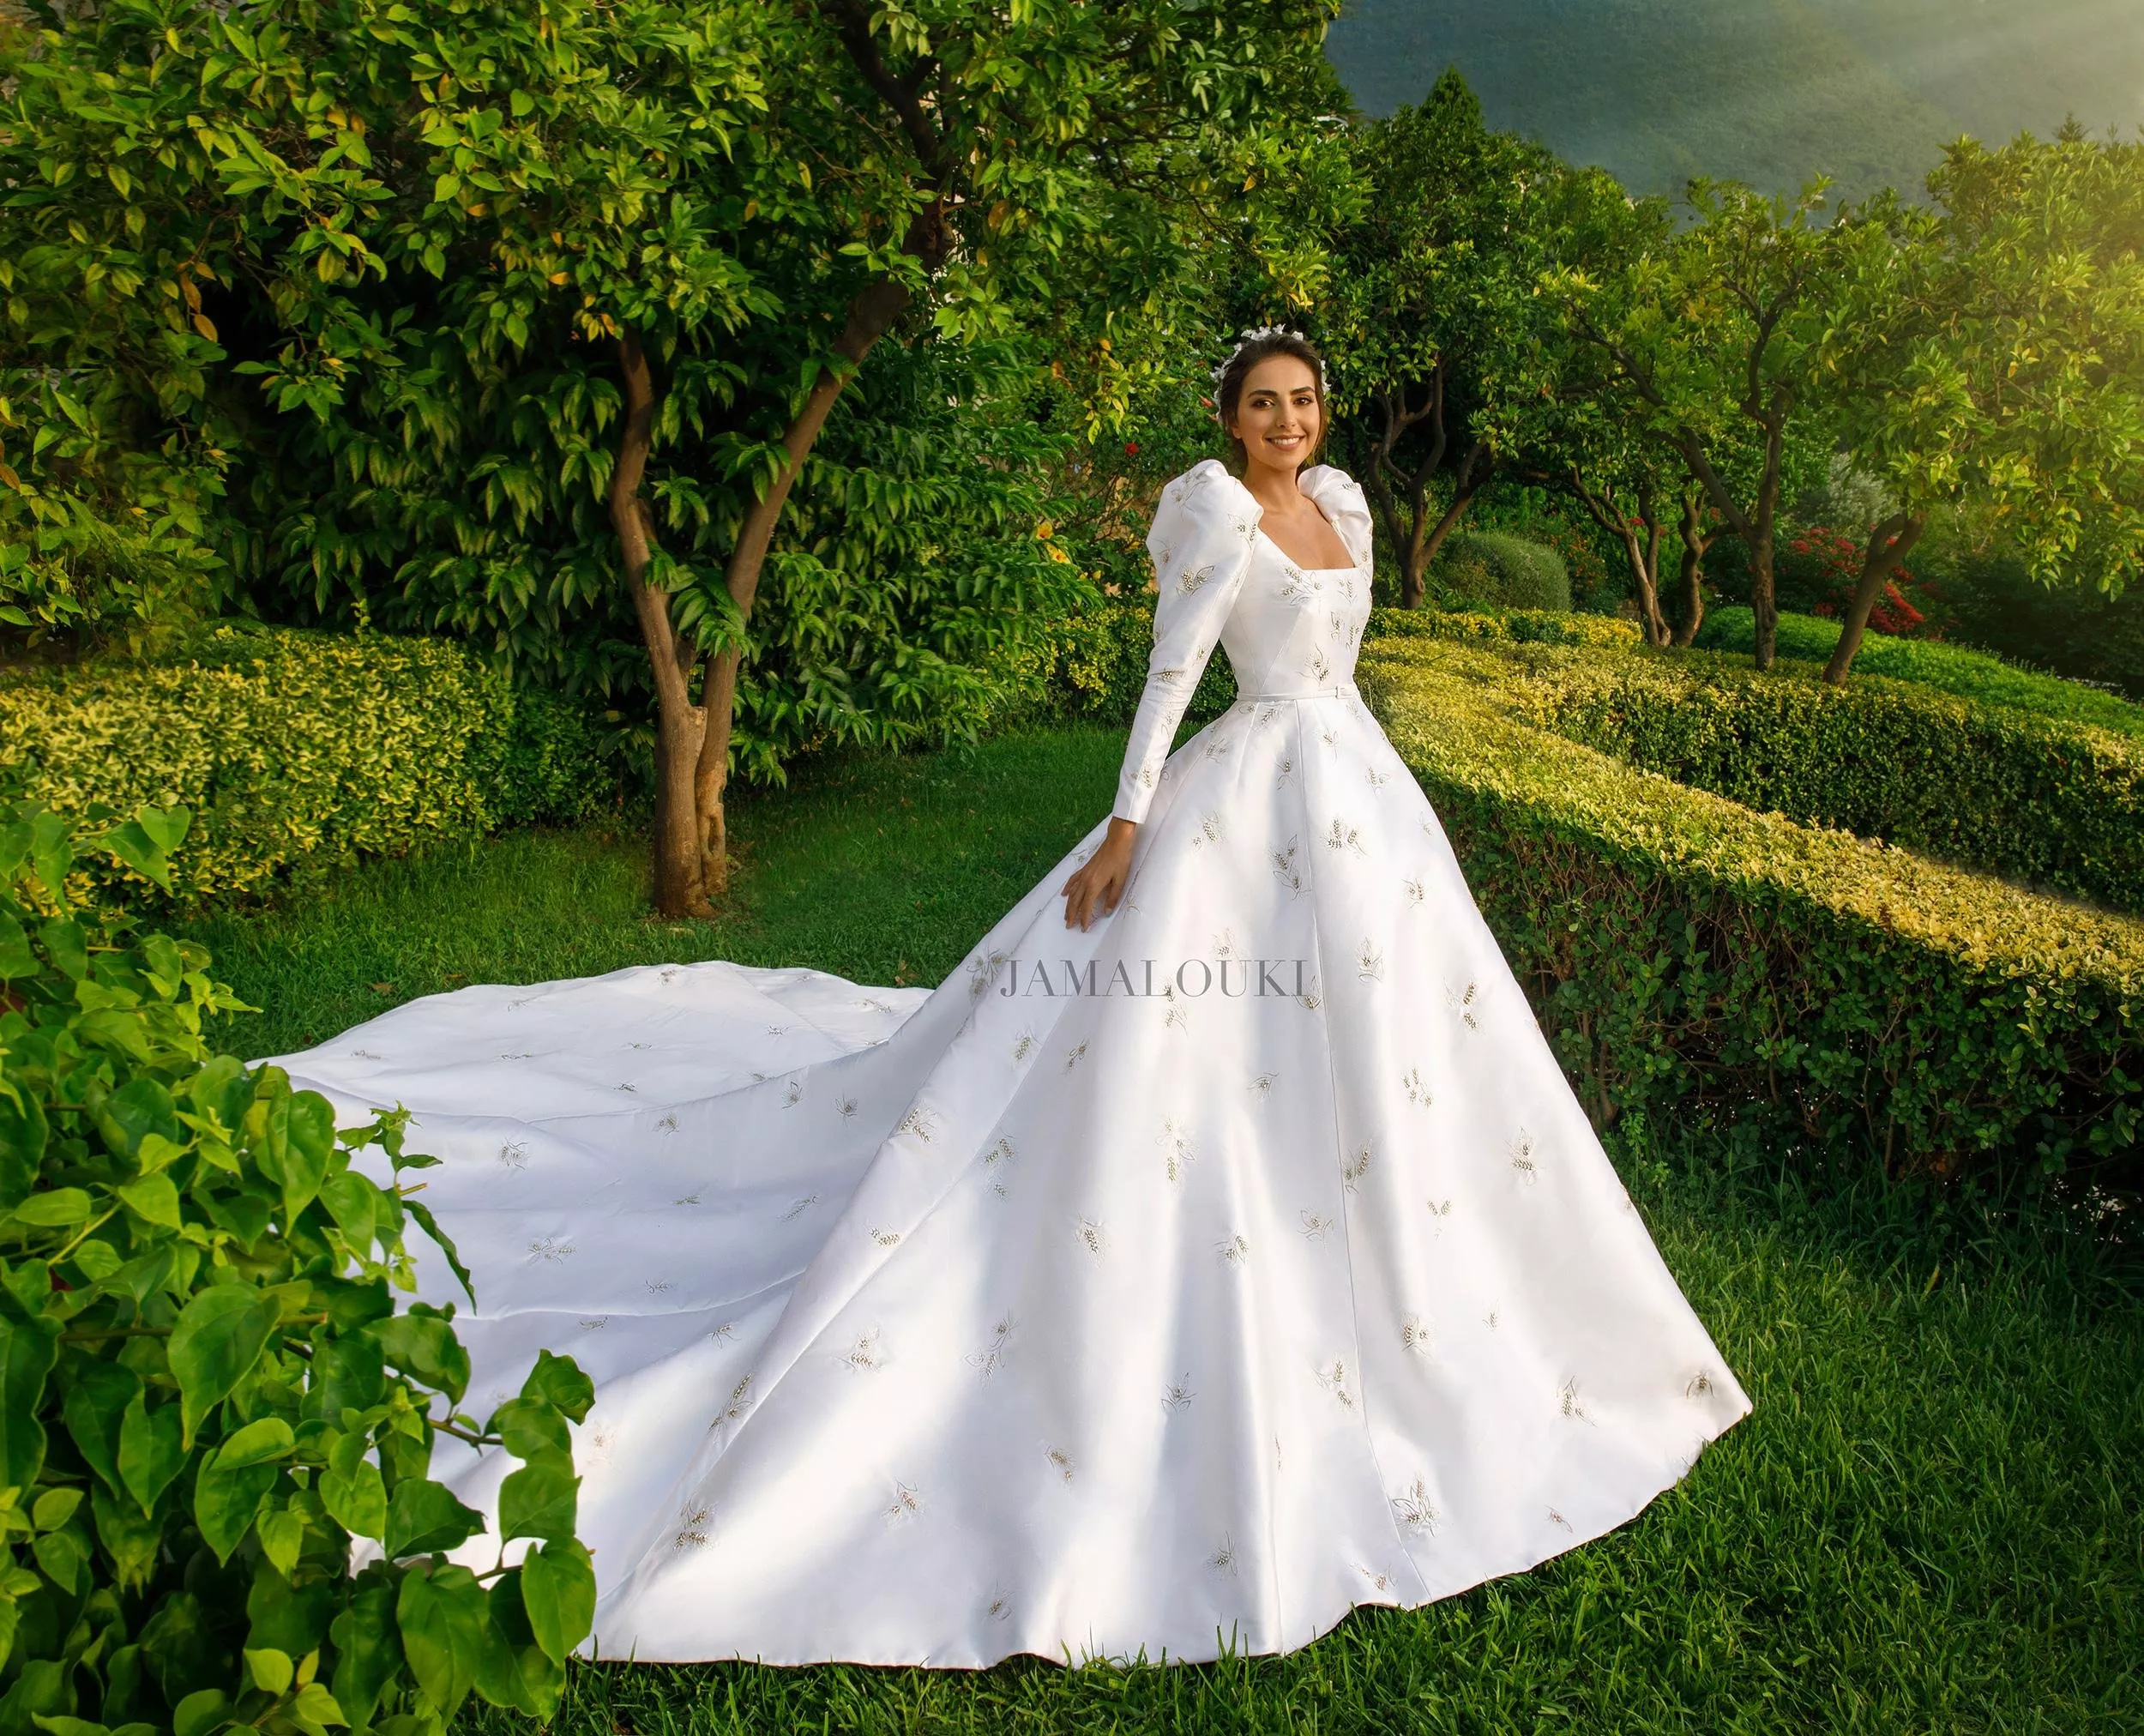 فستان زفاف فاليري أبو شقرا: تصميم ملوكي وساحر من Dior، بنفحة فينتاج